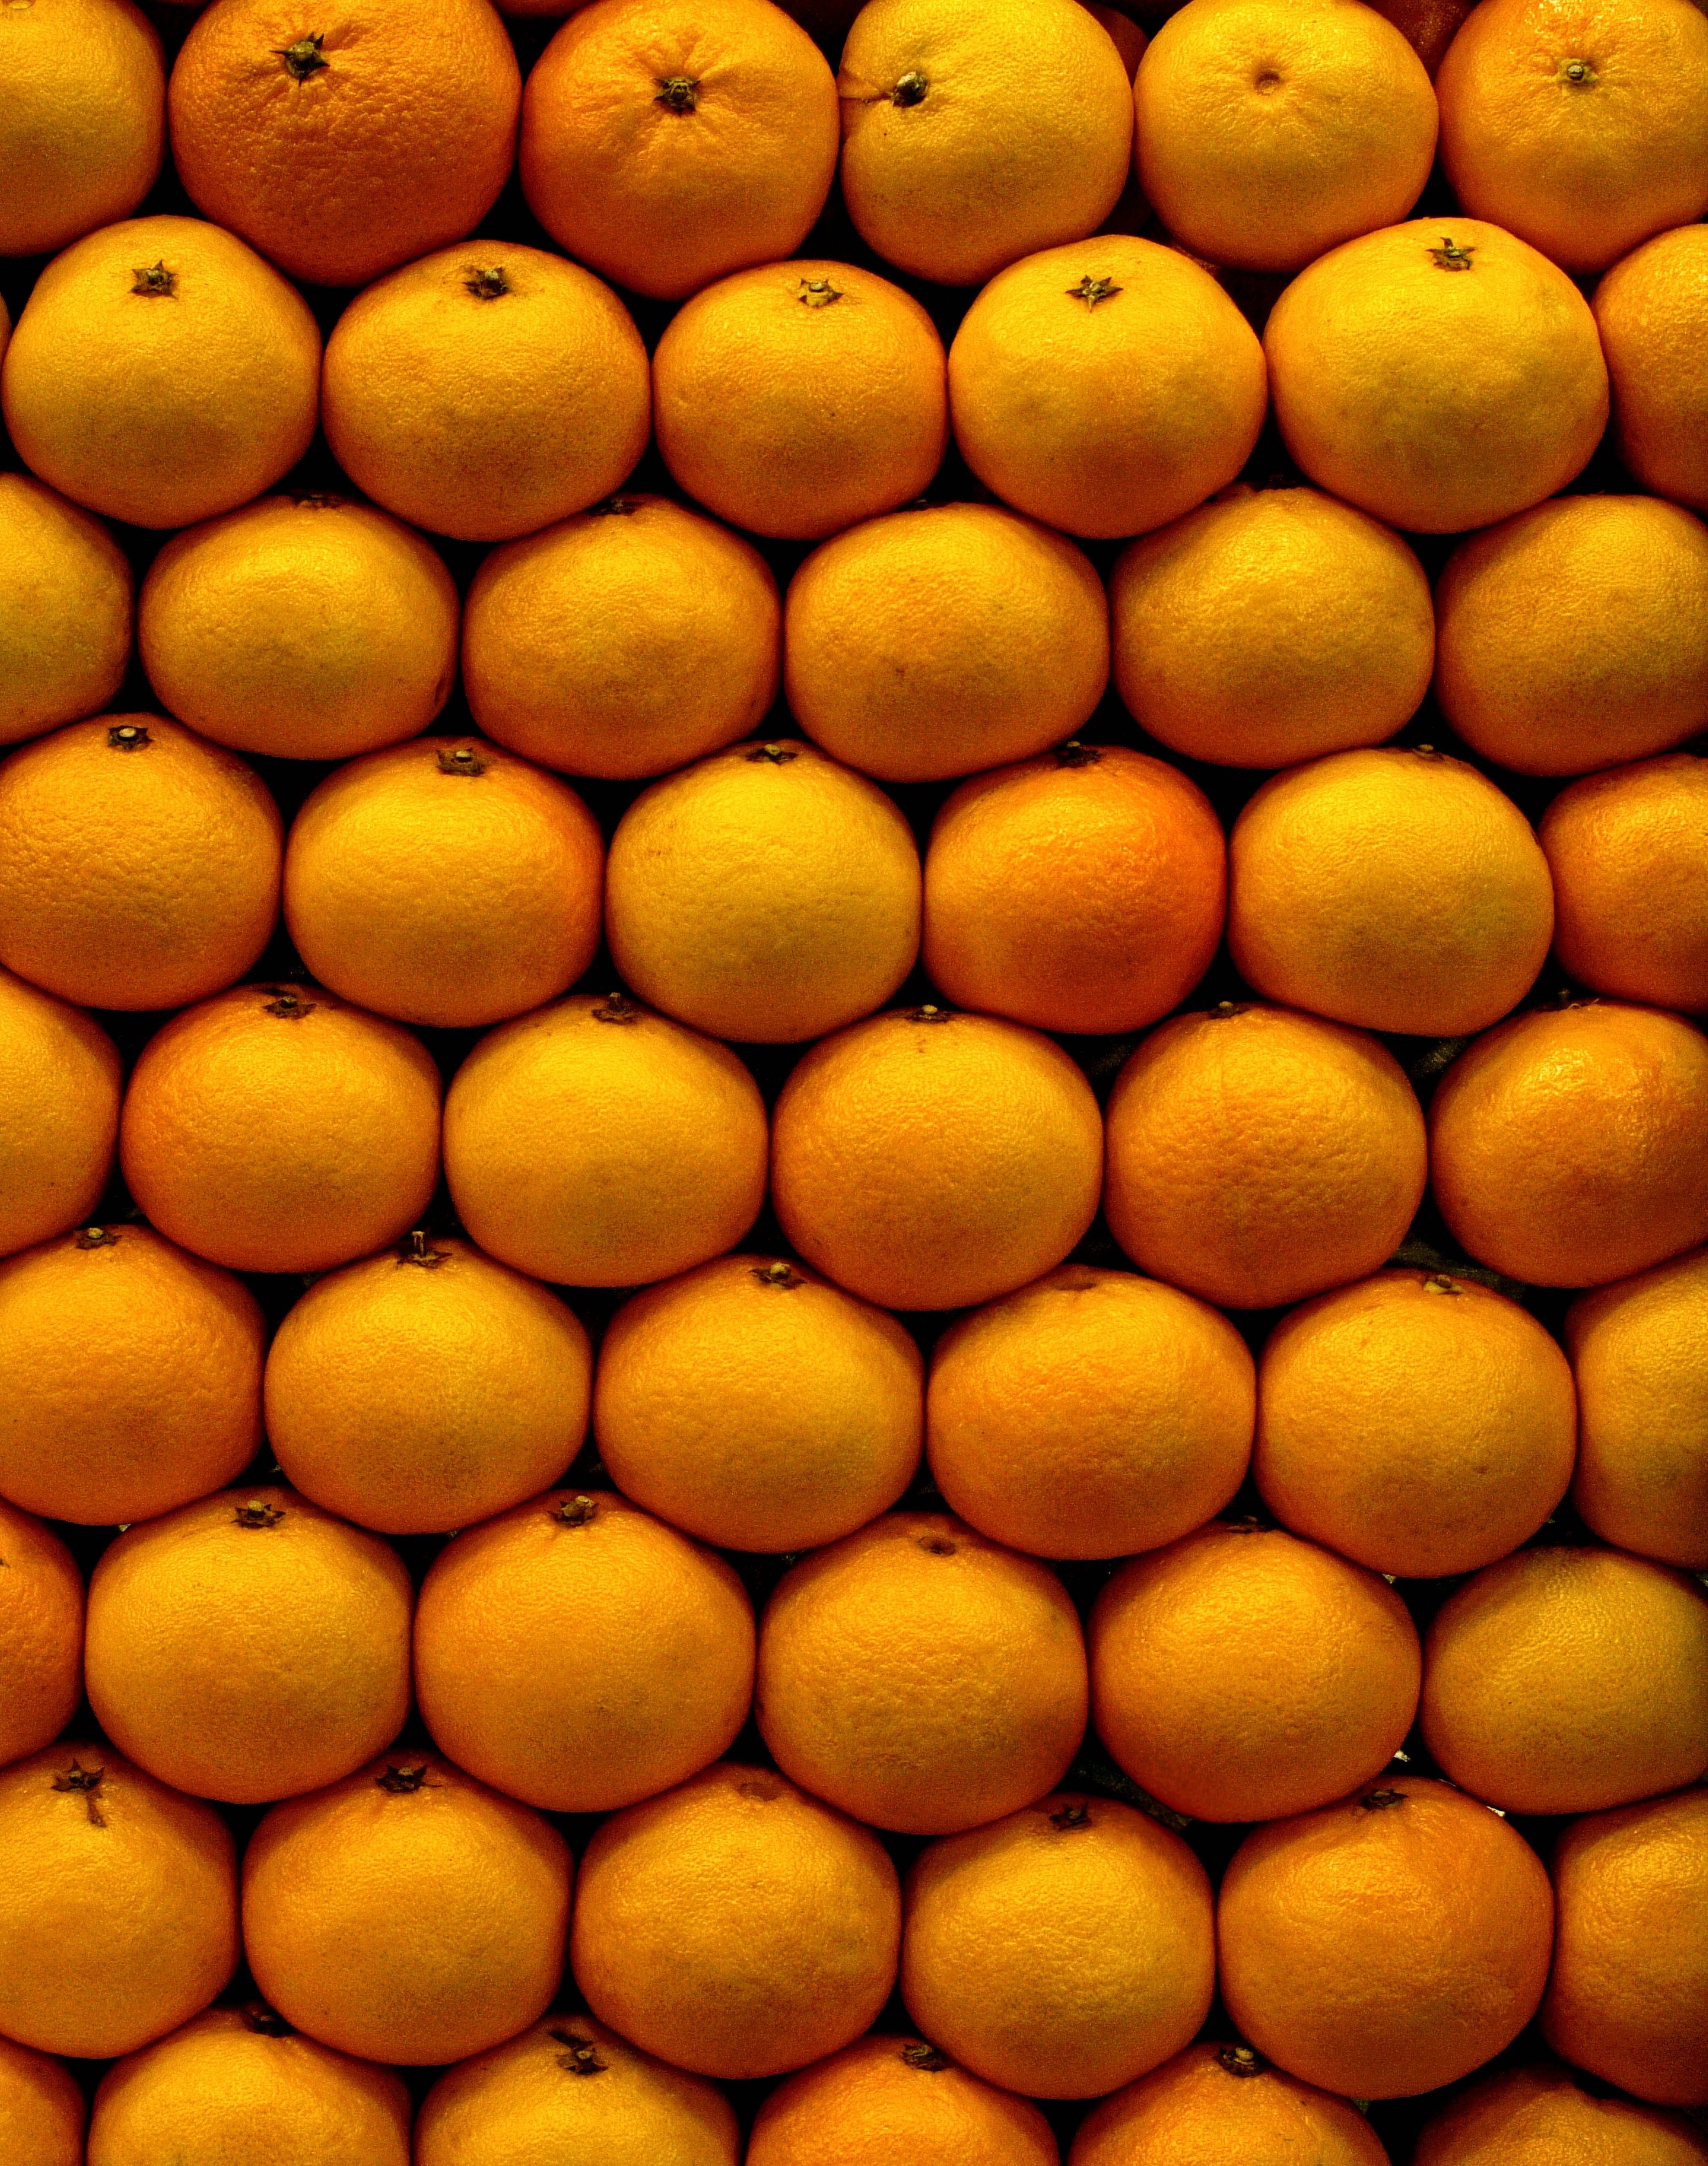 fruits, food, oranges, tangerines, citrus, ripe phone background